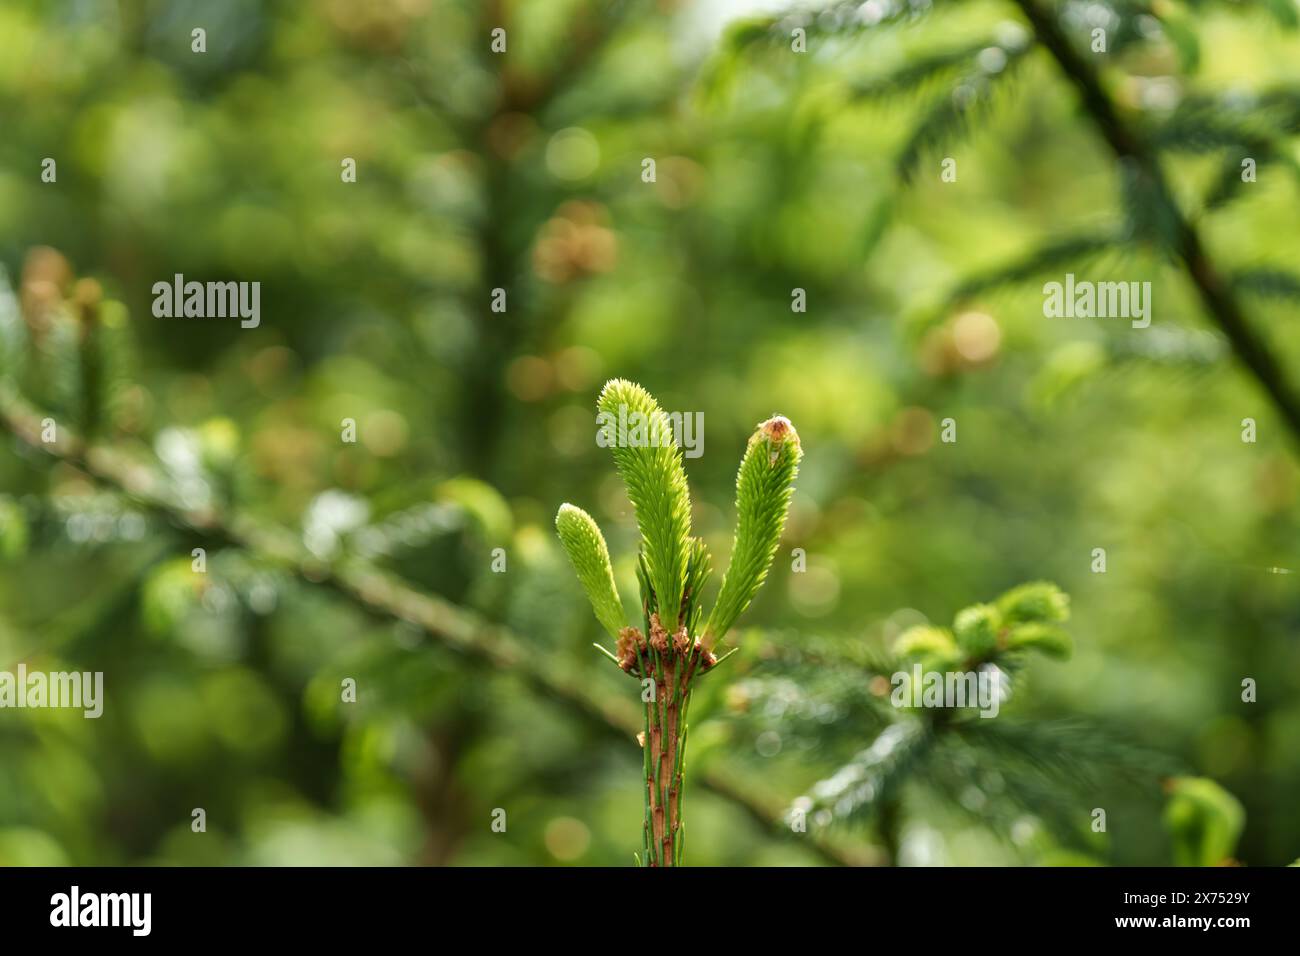 Une vue détaillée d'une feuille verte vibrante sur une plante terrestre, avec un paysage naturel flou en arrière-plan. La plante semble être une plante persistante Banque D'Images